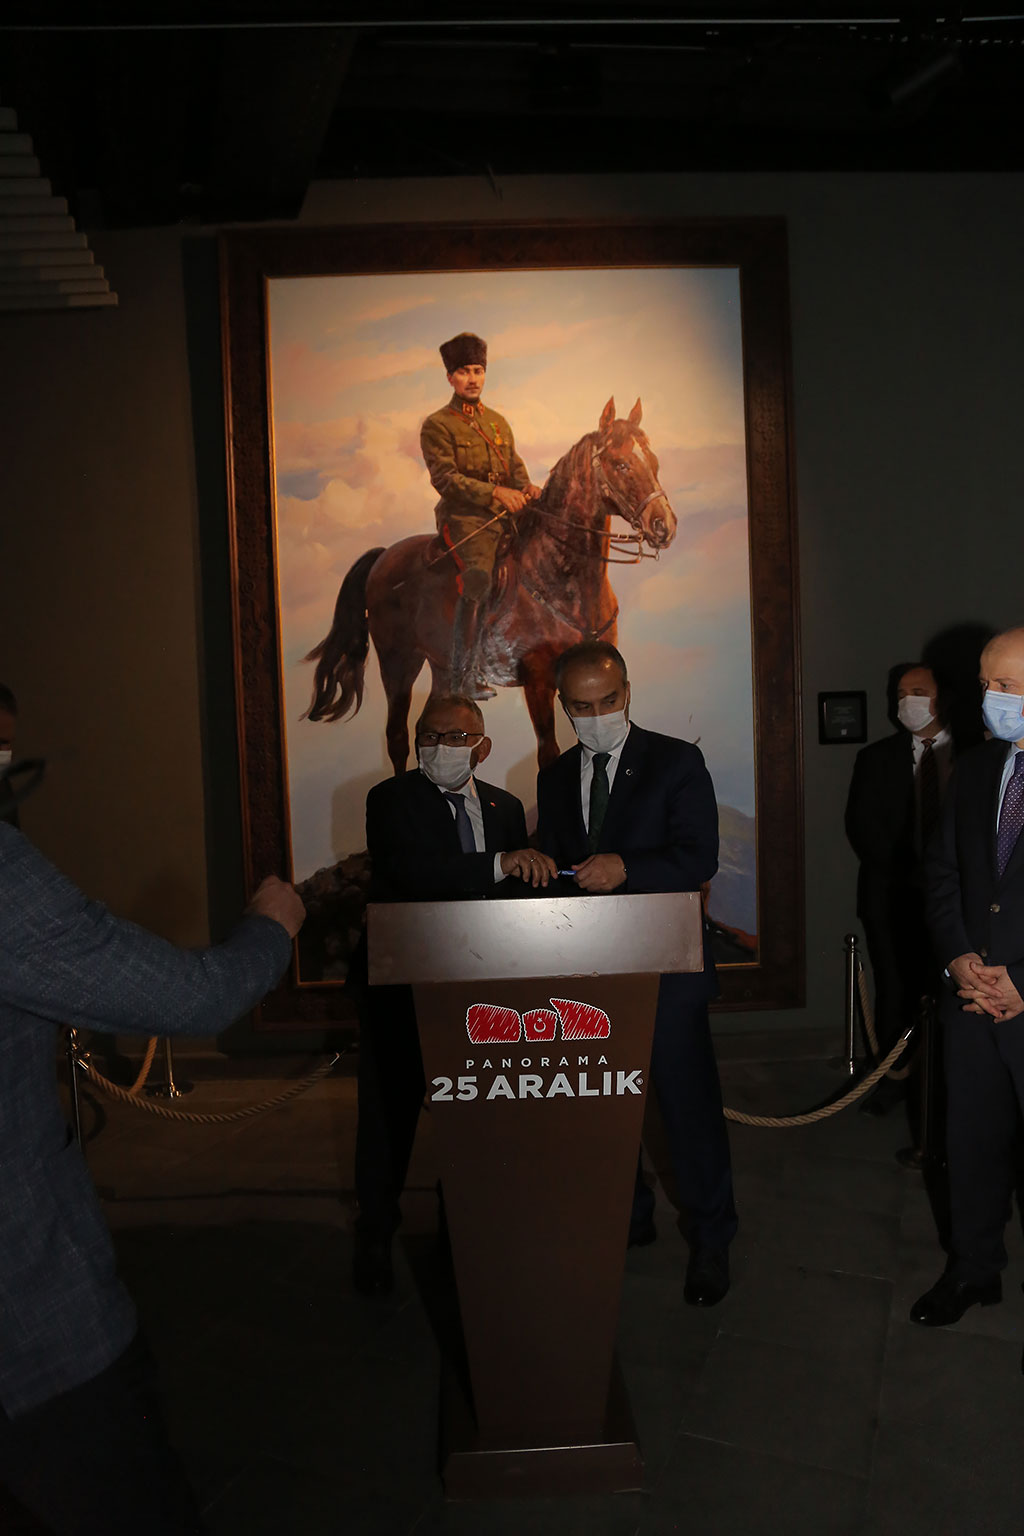 07.10.2021 - Başkan Büyükkılıç Gaziantep Panaroma Müzesi Gezi